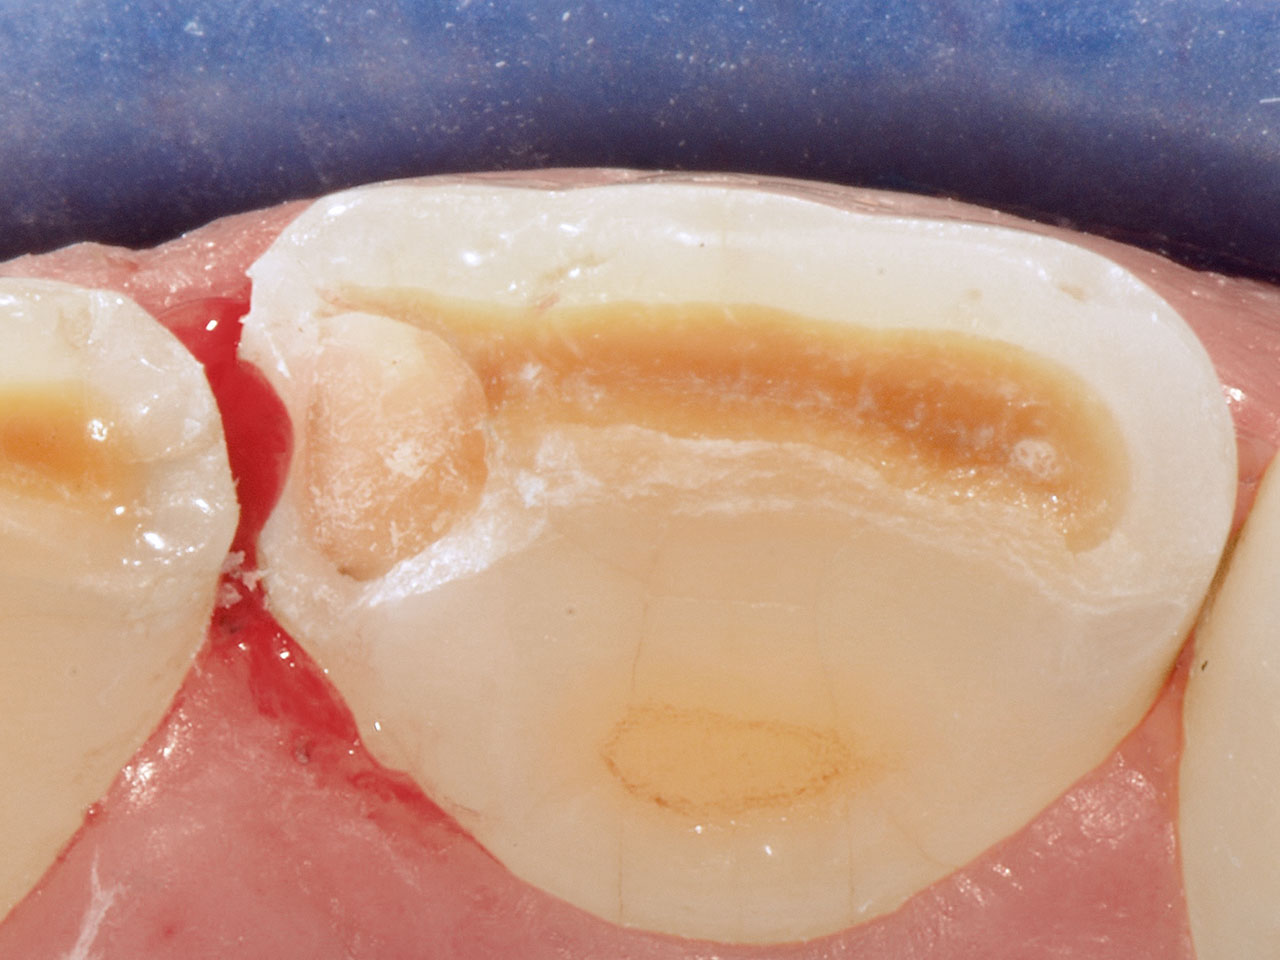 Abb. 1 Kontamination des Zahns 21 mesial mit Blut, welche vor Beginn des Ätzschrittes im Rahmen der adhäsiven Vorbehandlung (OptiBond FL, Kerr, Biberach) erfolgte.